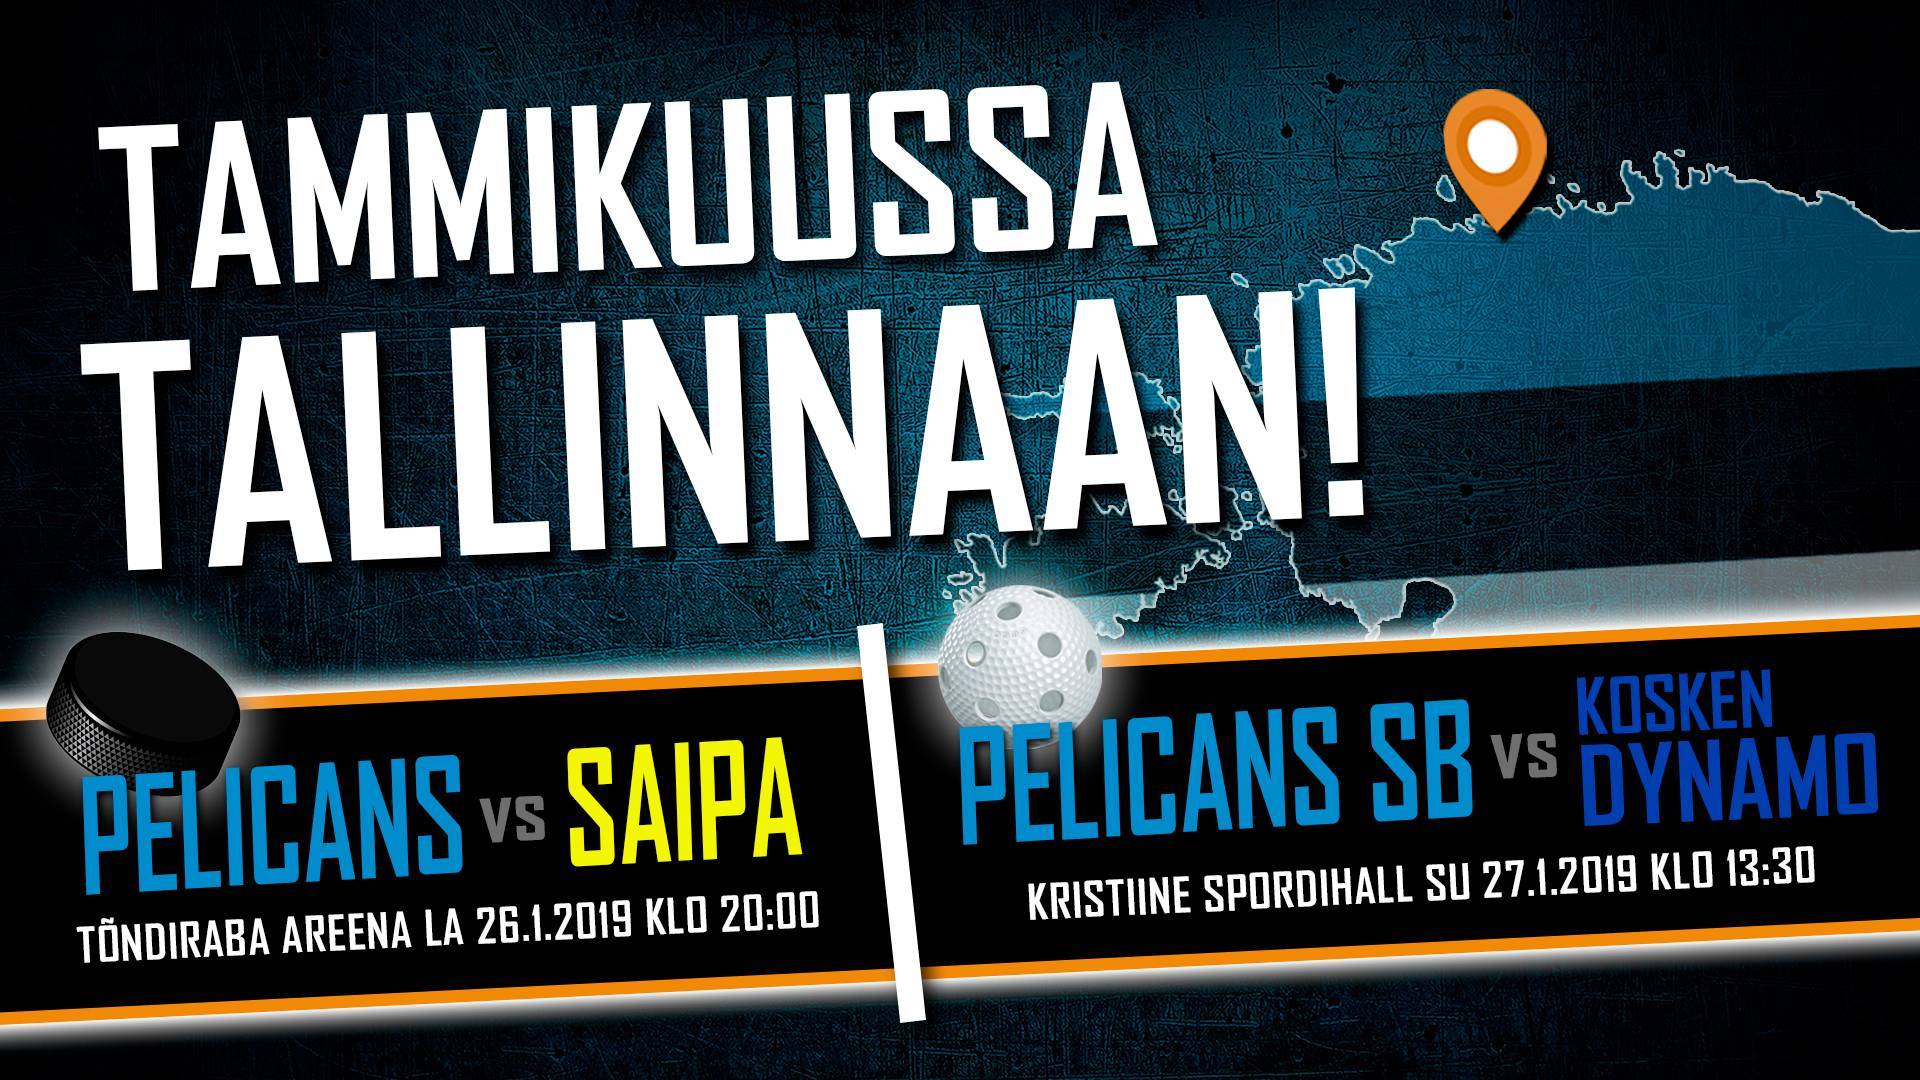 Pelicans SB tekee historiaa - tammikuussa otellaan Tallinnassa!